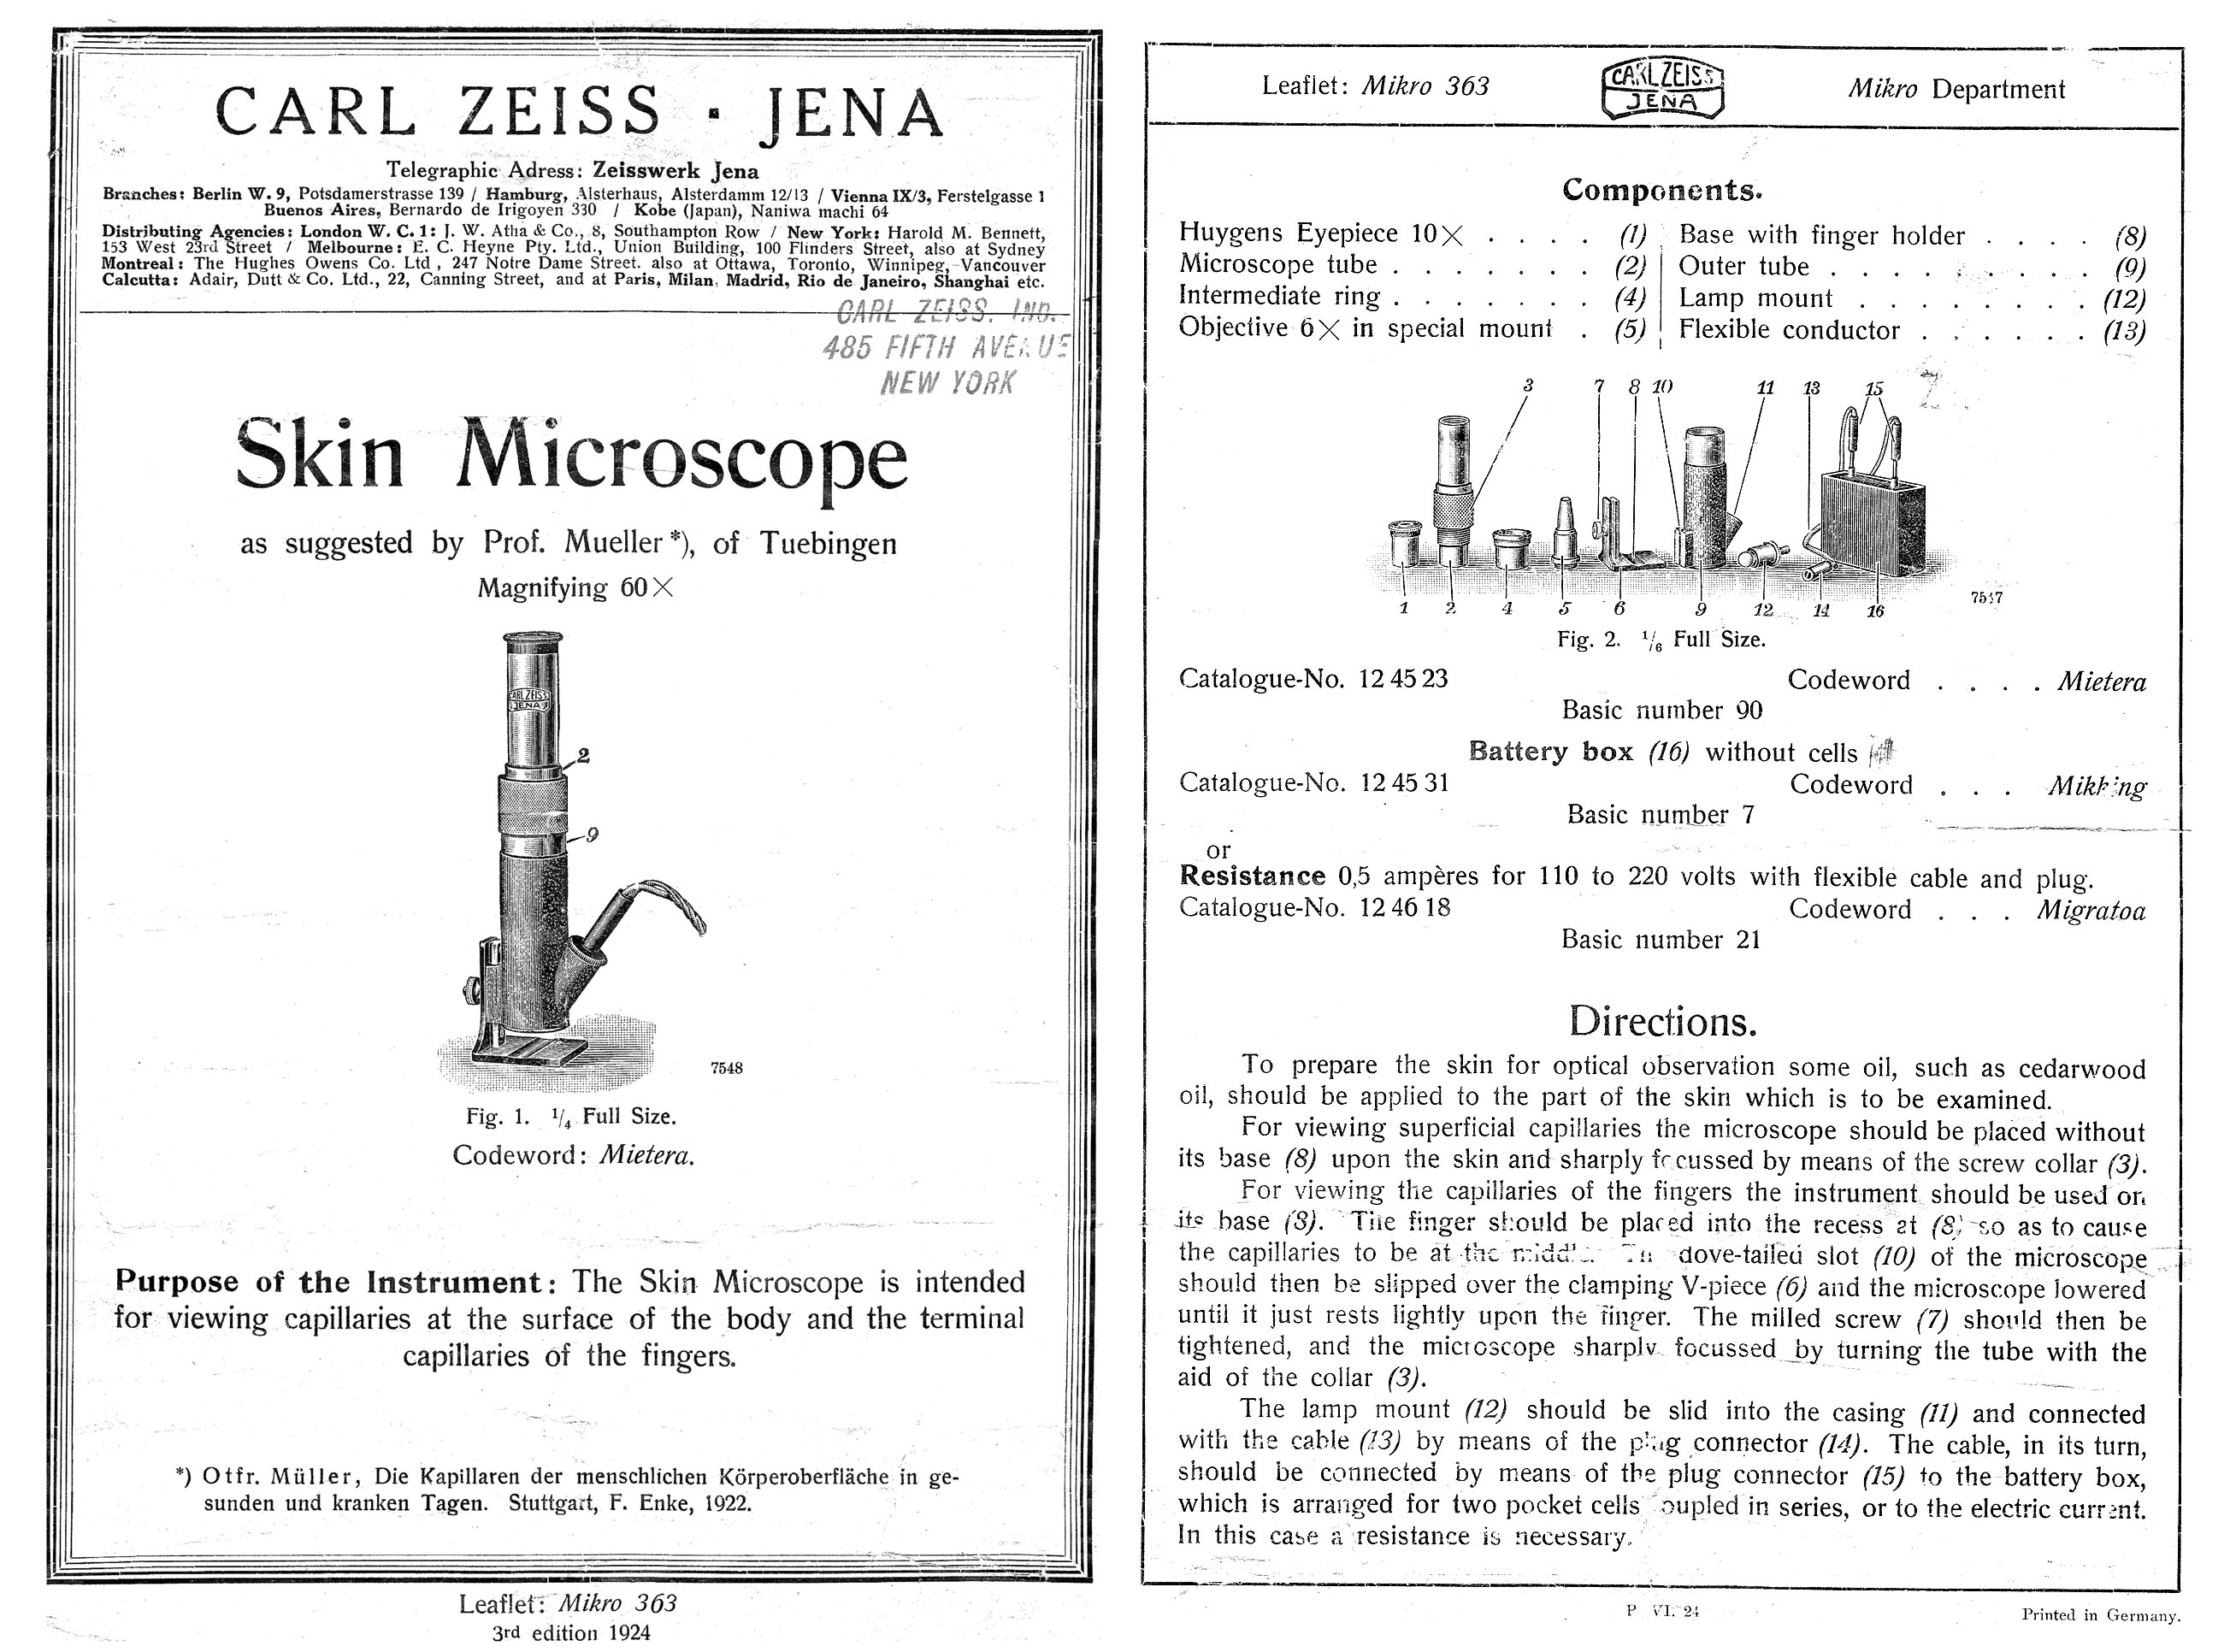 ZEISS Skin Microscope